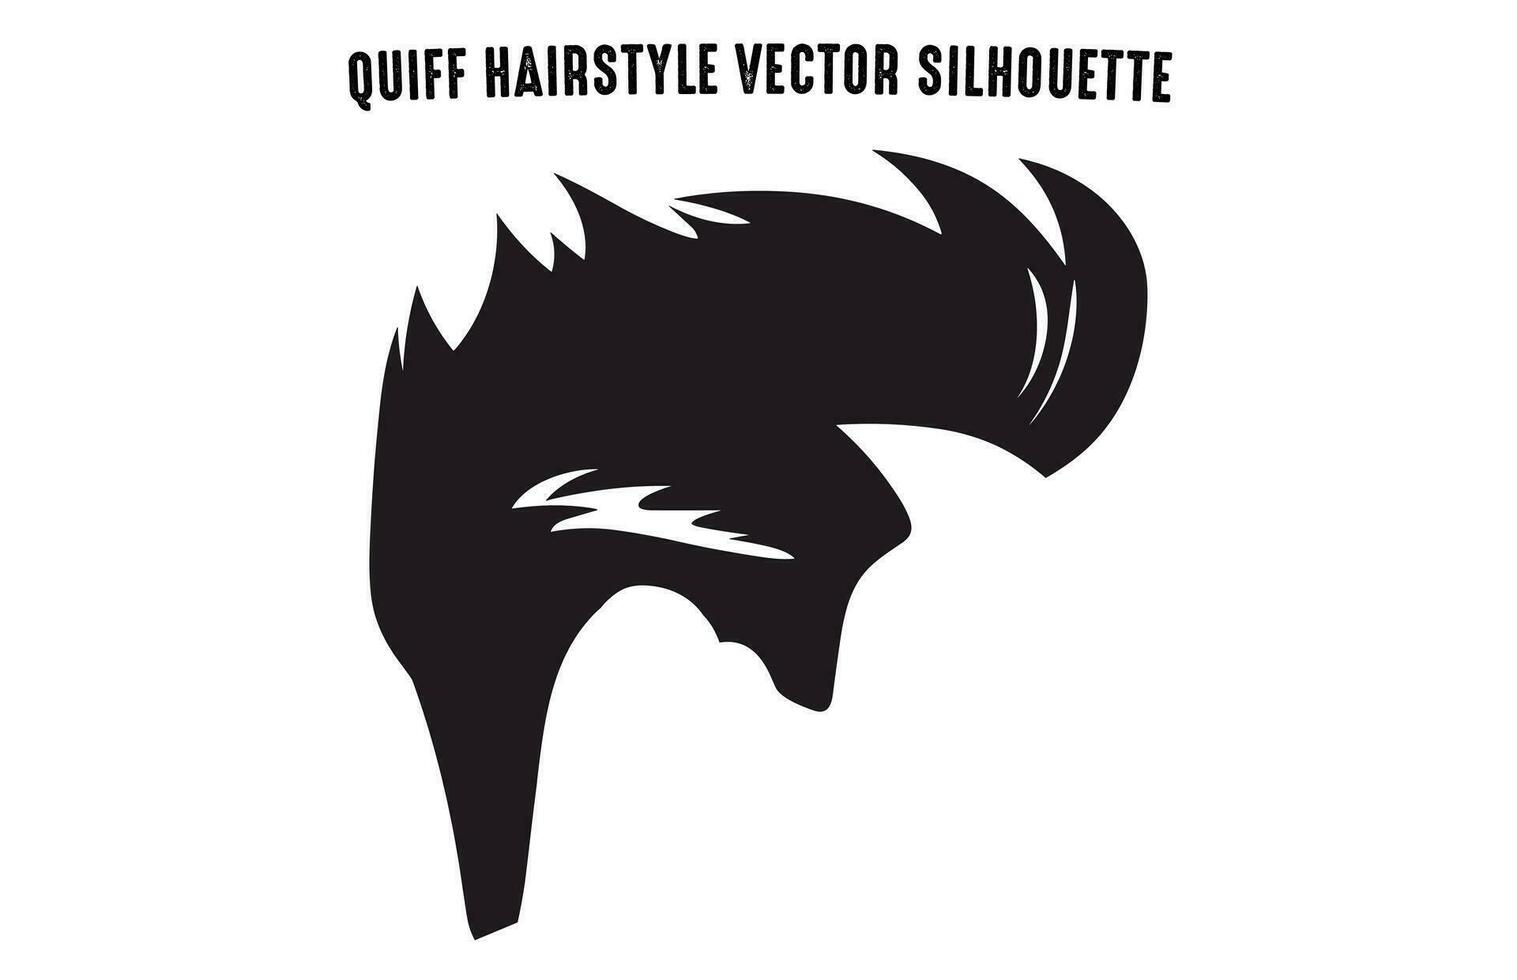 Tolle Frisur Haarschnitt Silhouetten Vektor kostenlos